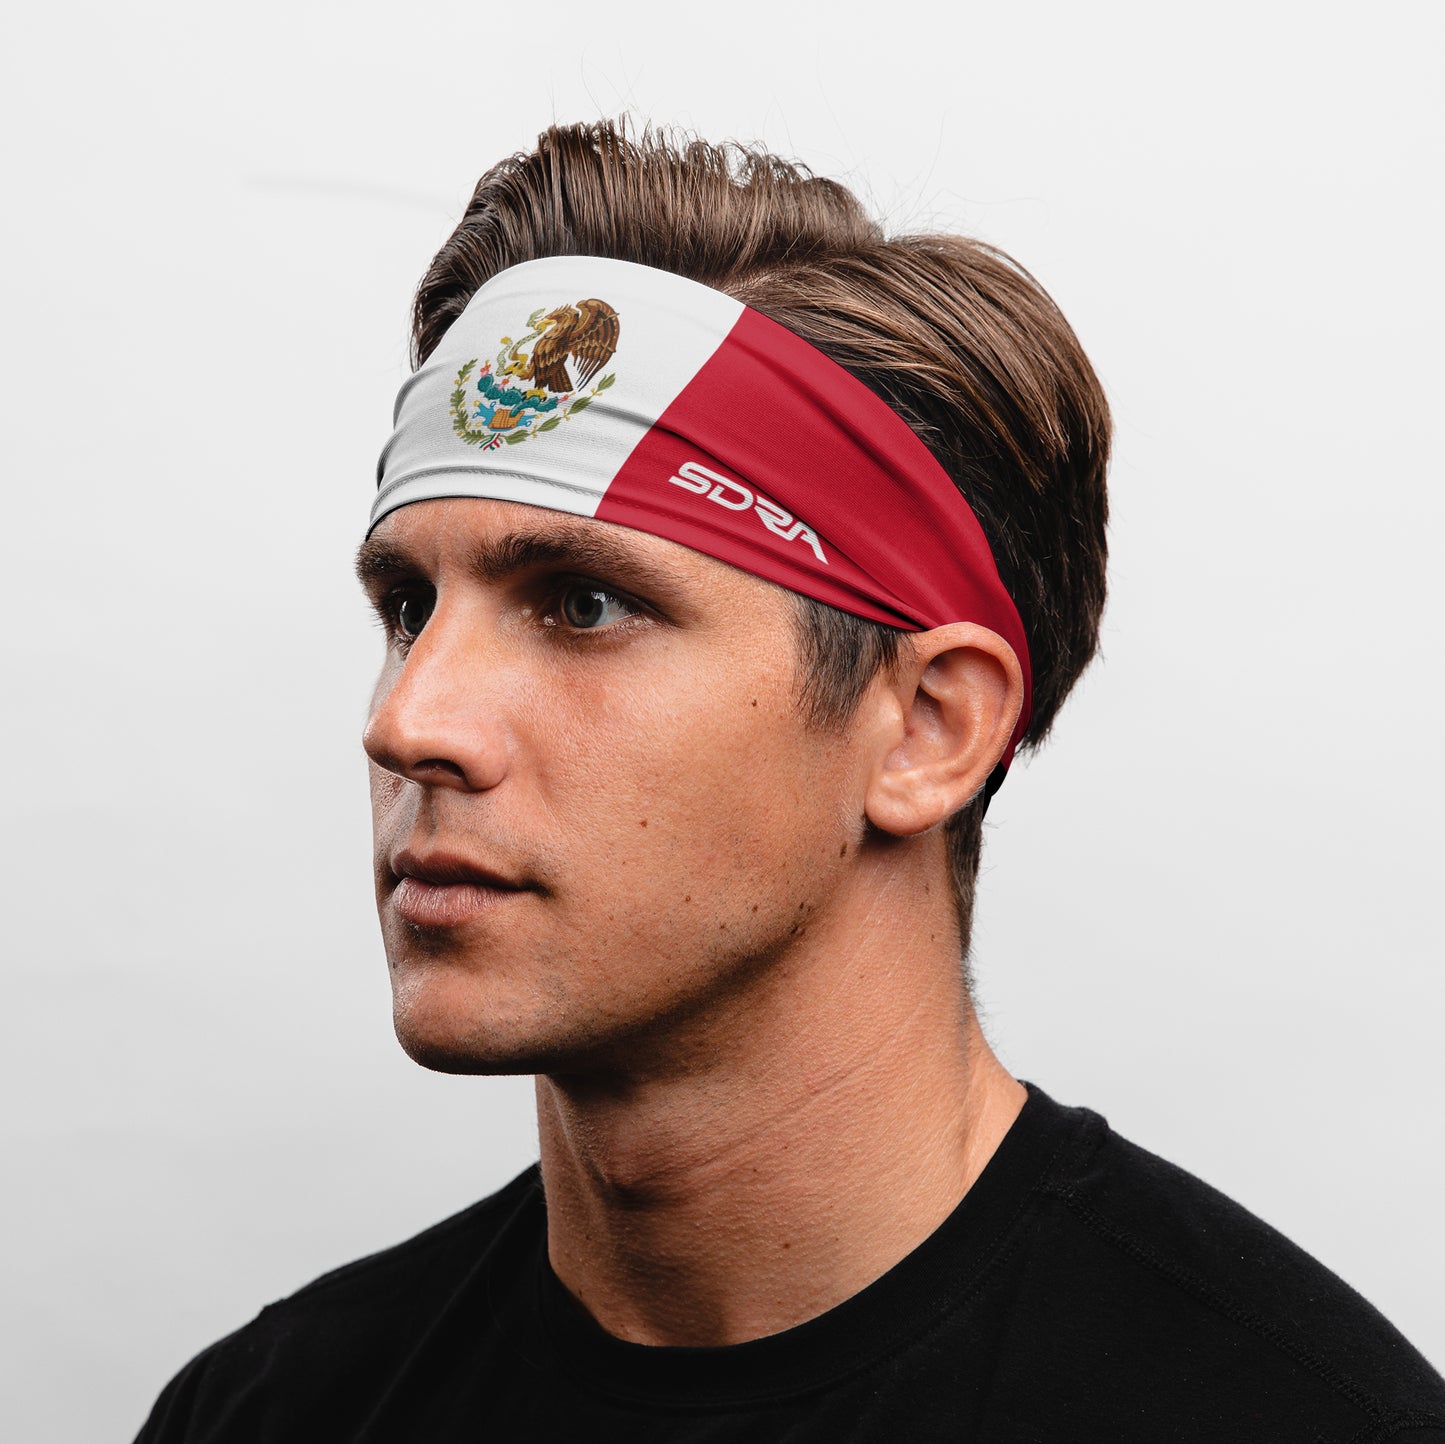 Mexico Tapered Non-Slip Headband